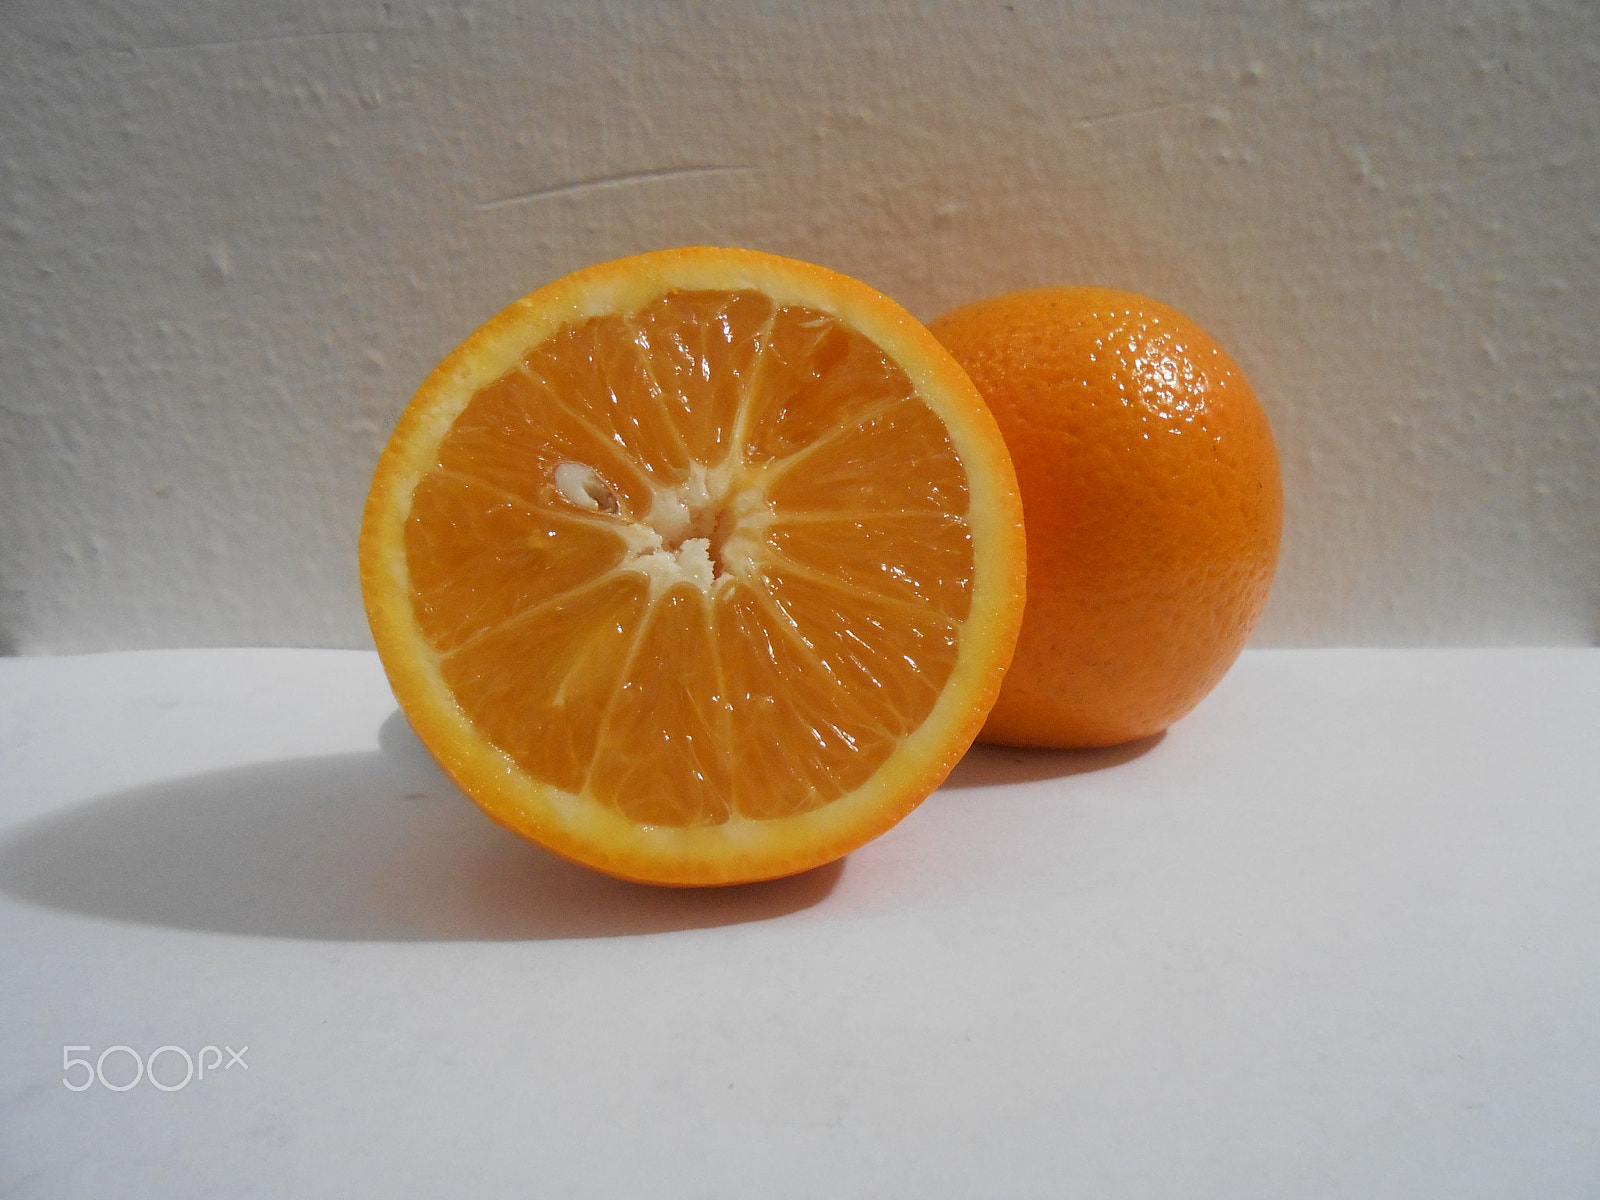 Nikon Coolpix S4300 sample photo. Naranja natural photography